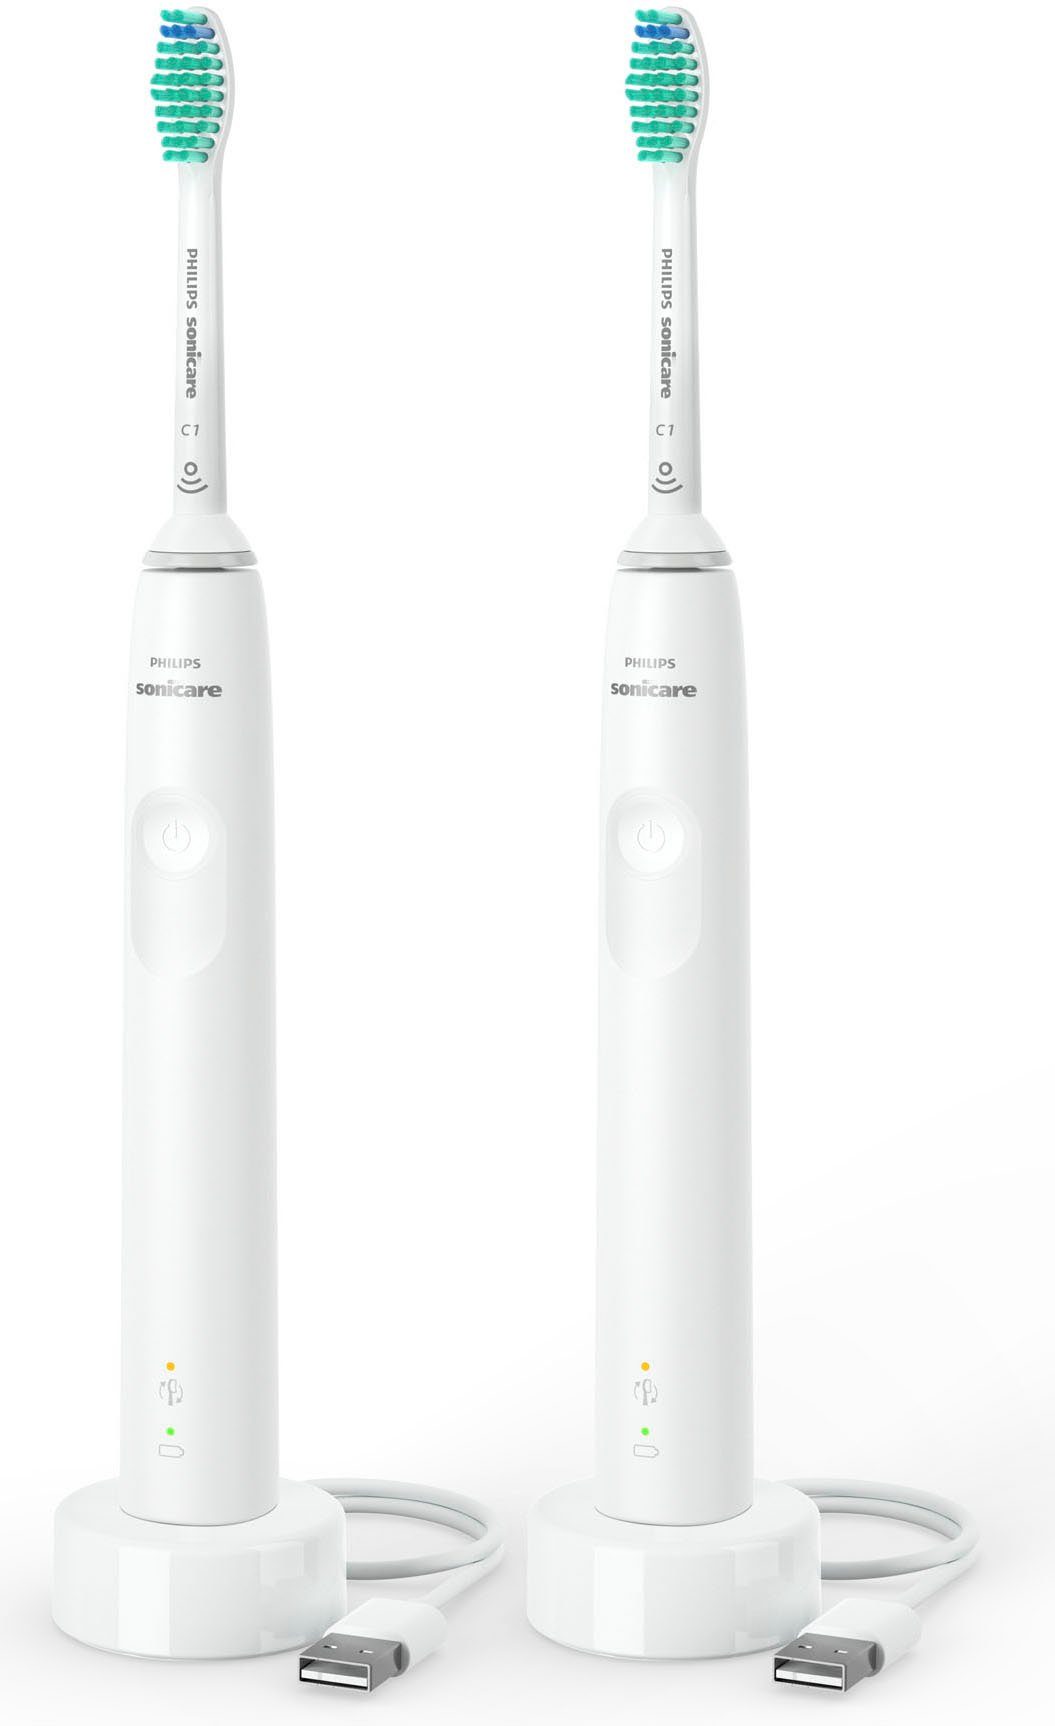 Philips Sonicare Elektrische Zahnbürste HX3675/13, Aufsteckbürsten: 2 St.,  mit Schalltechnologie, Druckensensor, 4-Quadranten-Timer und  2-Minuten-Timer online kaufen | OTTO